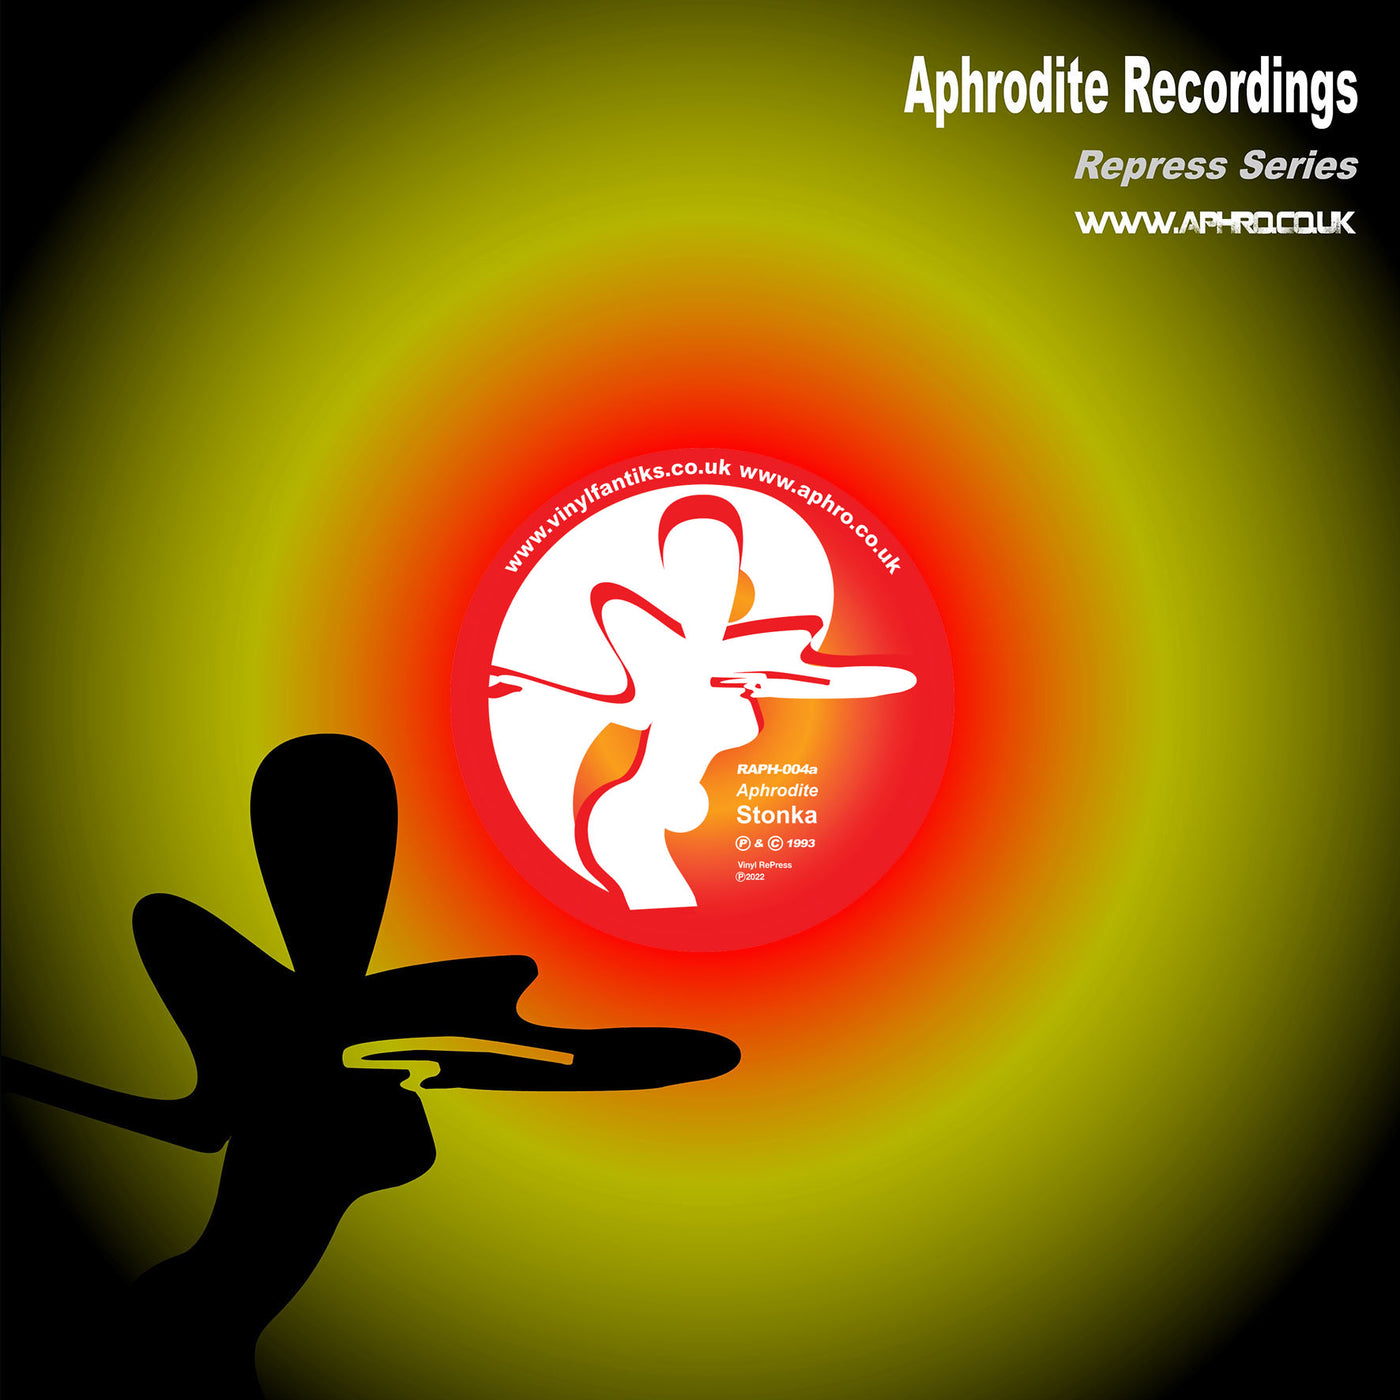 Aphrodite Recordings Bundle Pack - T-Shirt/RAPH004/RAPH007